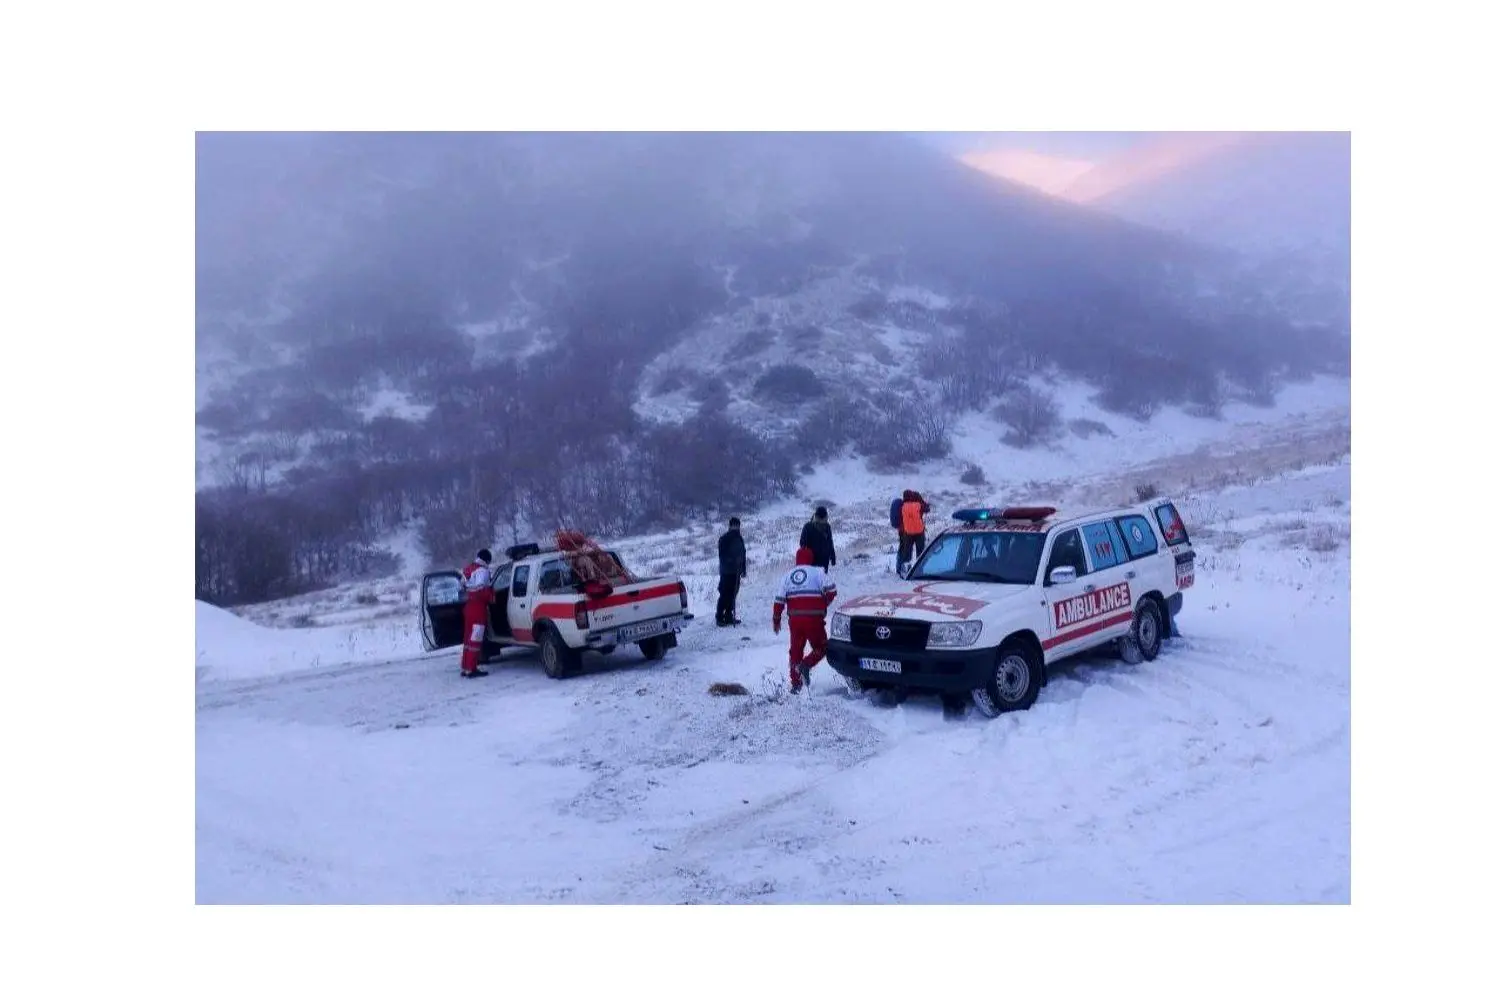 نجات ۴ کوهنورد در ارتفاعات اردبیل